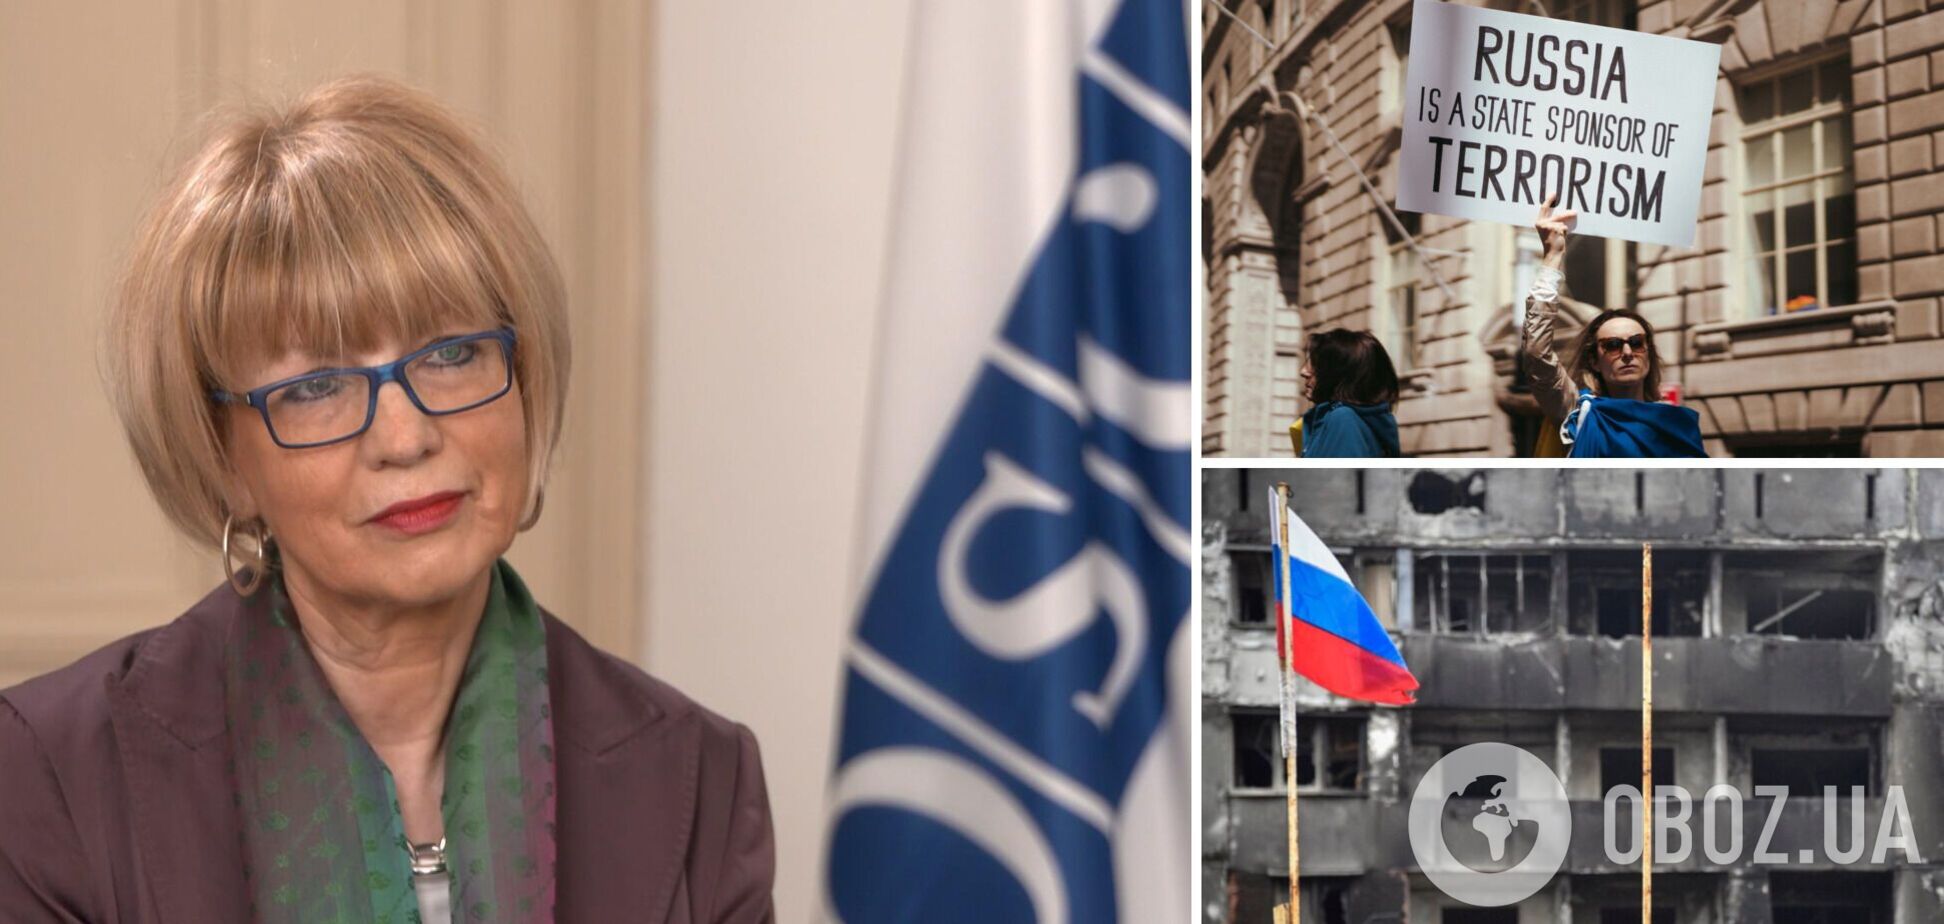 'Однажды нам снова понадобятся каналы связи': генсек ОБСЕ выступила против исключения России из организации